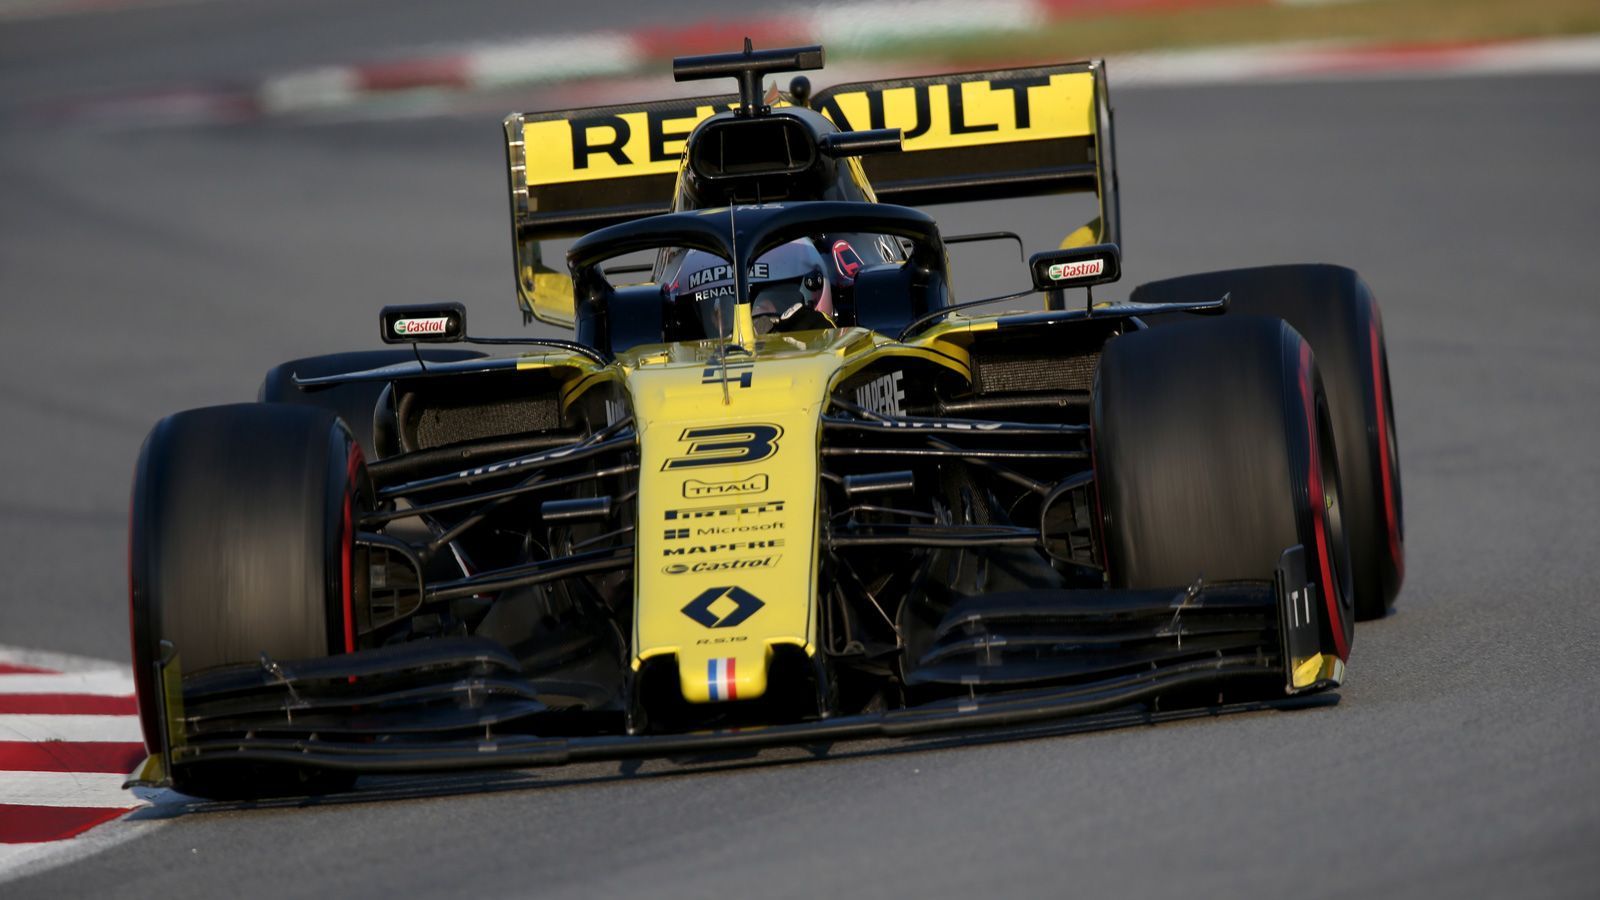 
                <strong>Platz 5: Renault</strong><br>
                "Das Auto ist weder eine Bombe, noch ein Flop. Wir schwimmen im vorderen Mittelfeld rum", analysiert Renault-Pilot Nico Hülkenberg realistisch. Es hänge "von der Tagesform ab", welchen Platz die Franzosen im Verfolgerfeld einnehmen, meint Teamchef Cyril Abiteboul. Im abschließenden Bestzeitenvergleich von Barcelona belegte "Hulk" immerhin Rang fünf, kein schlechtes Ergebnis. Positiv sei auch für das neue Team von Ex-Red-Bull-Star Daniel Ricciardo, dass man den Abstand zur Spitze halbiert habe - zumindest geht Renault-Chassischef Nick Chester davon aus. Der neue Renault-Antrieb, den auch McLaren im Heck hat, soll 40 PS mehr auf die Strecke bringen als noch im Vorjahr. 
              